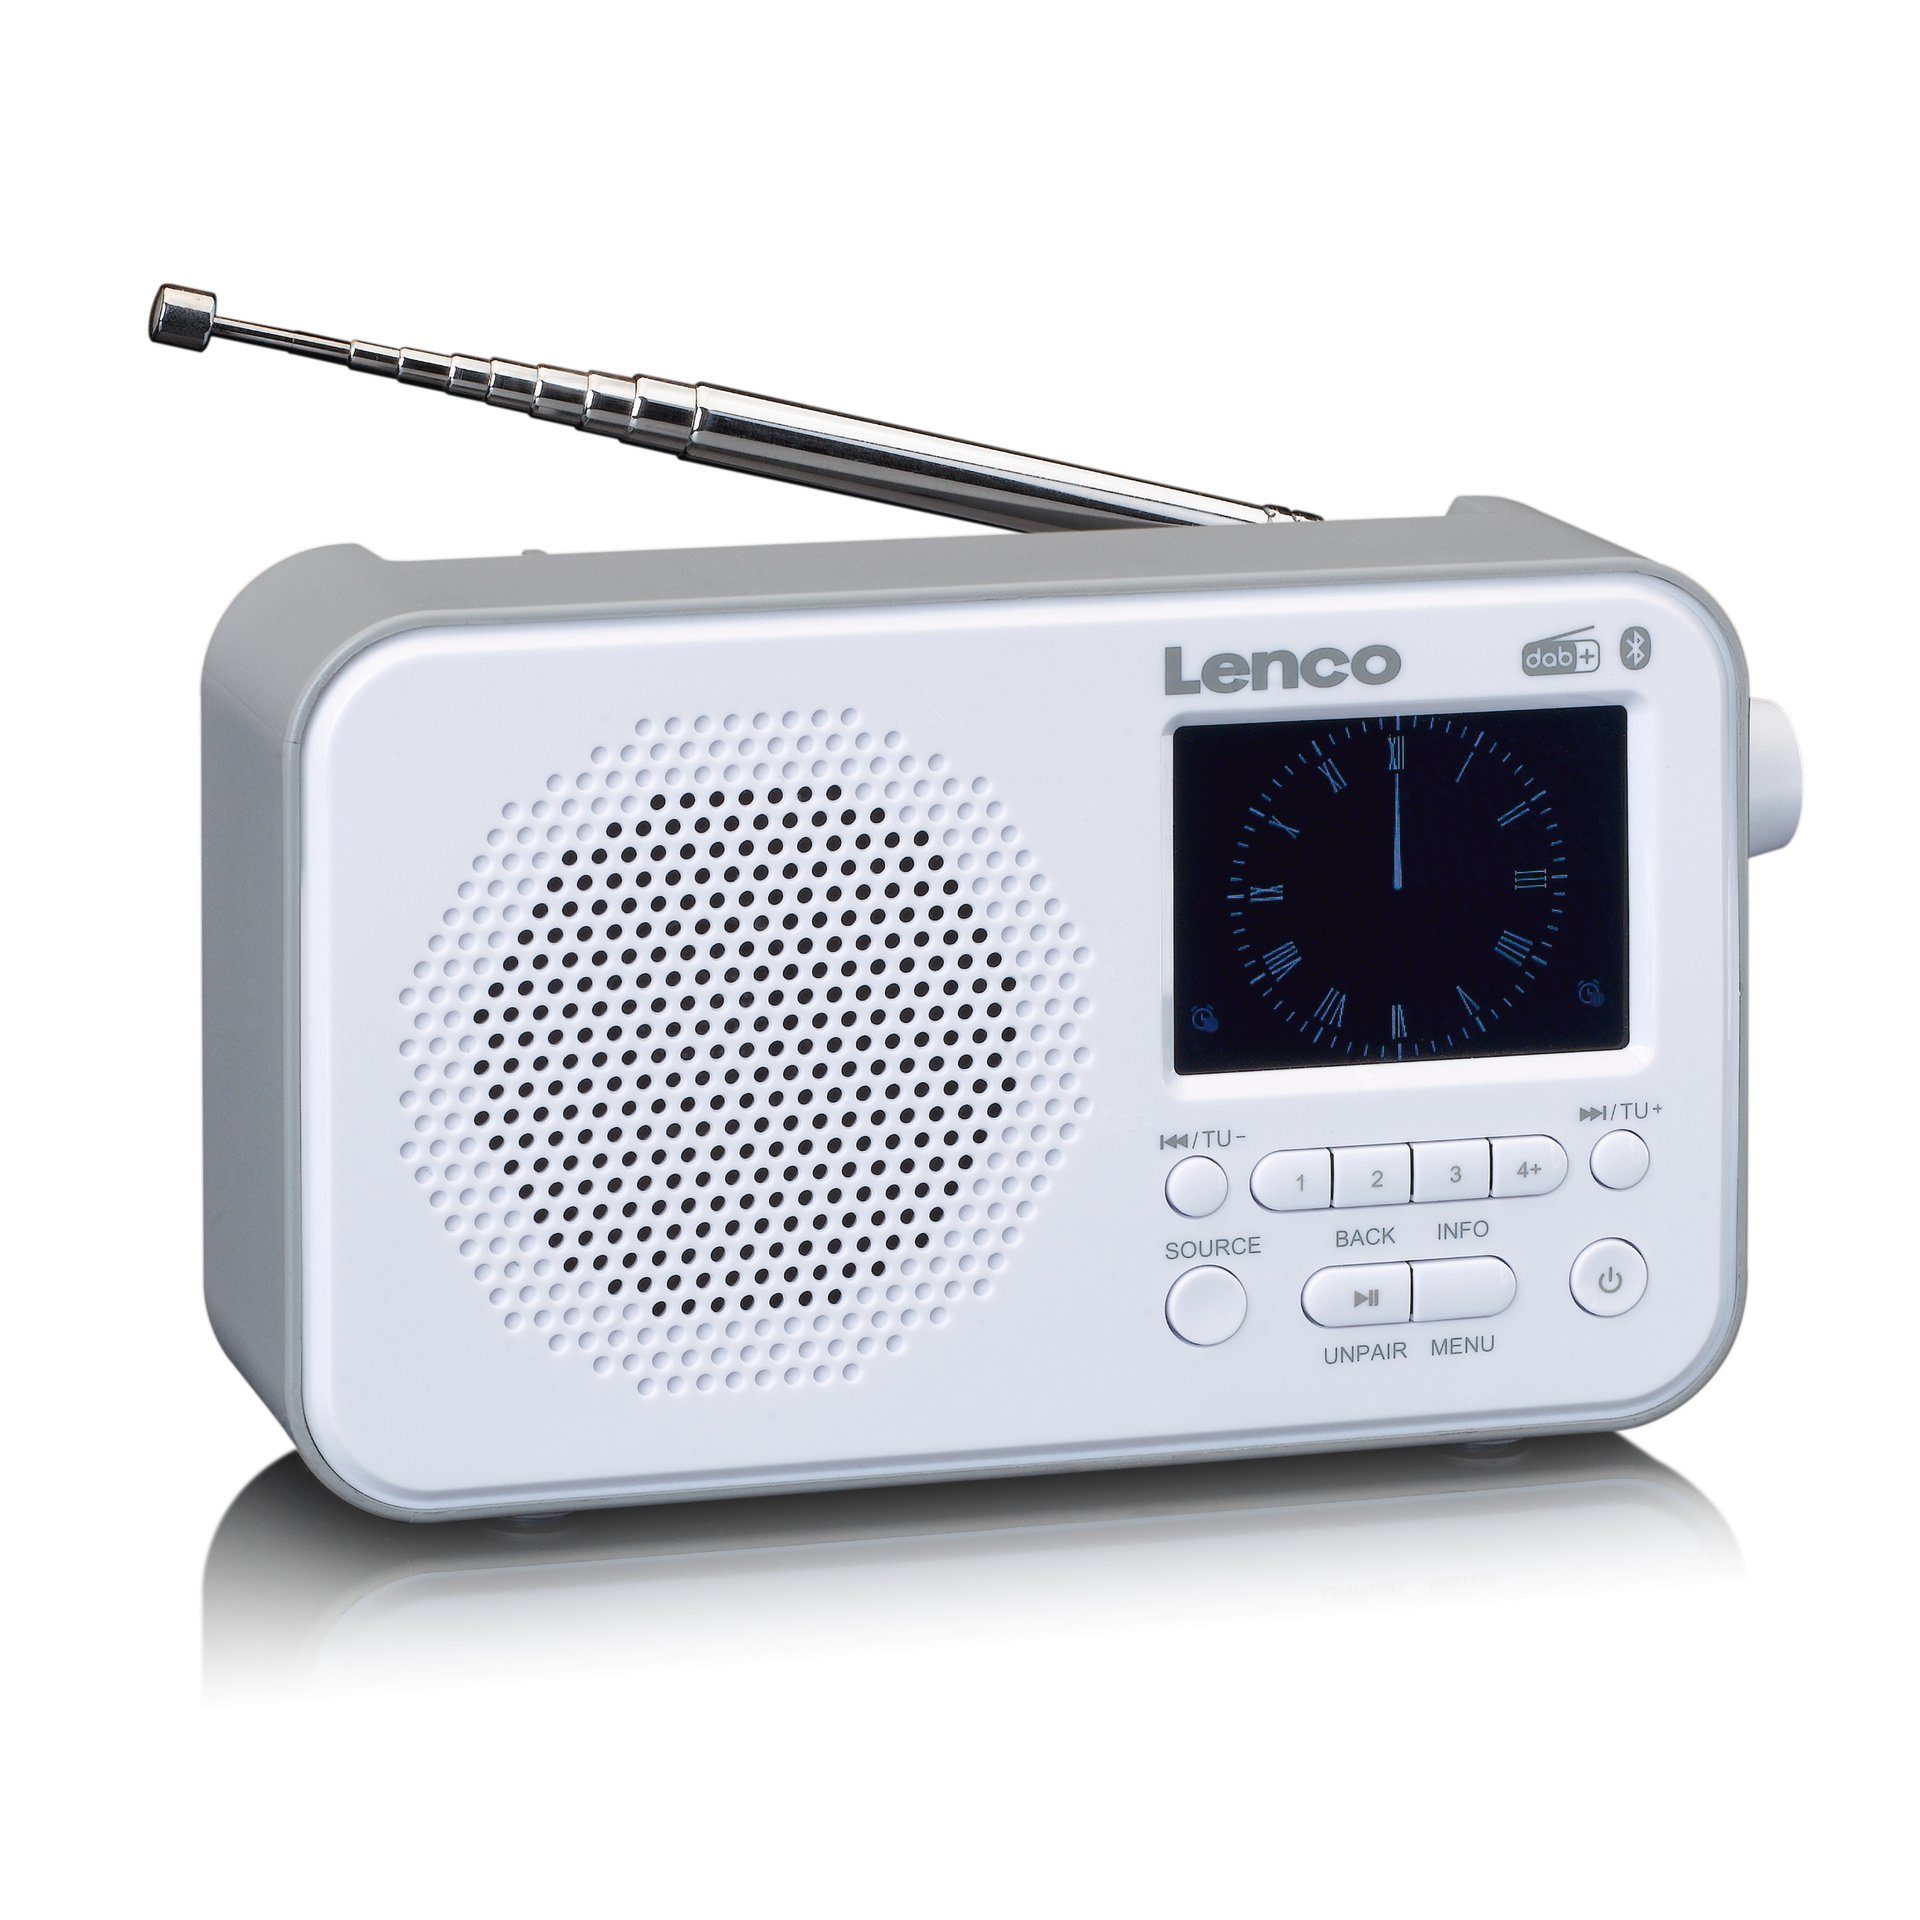 Lenco (DAB) (DAB) - Digitalradio PDR-036WH DAB+/FM-Radio (Digitalradio weiß